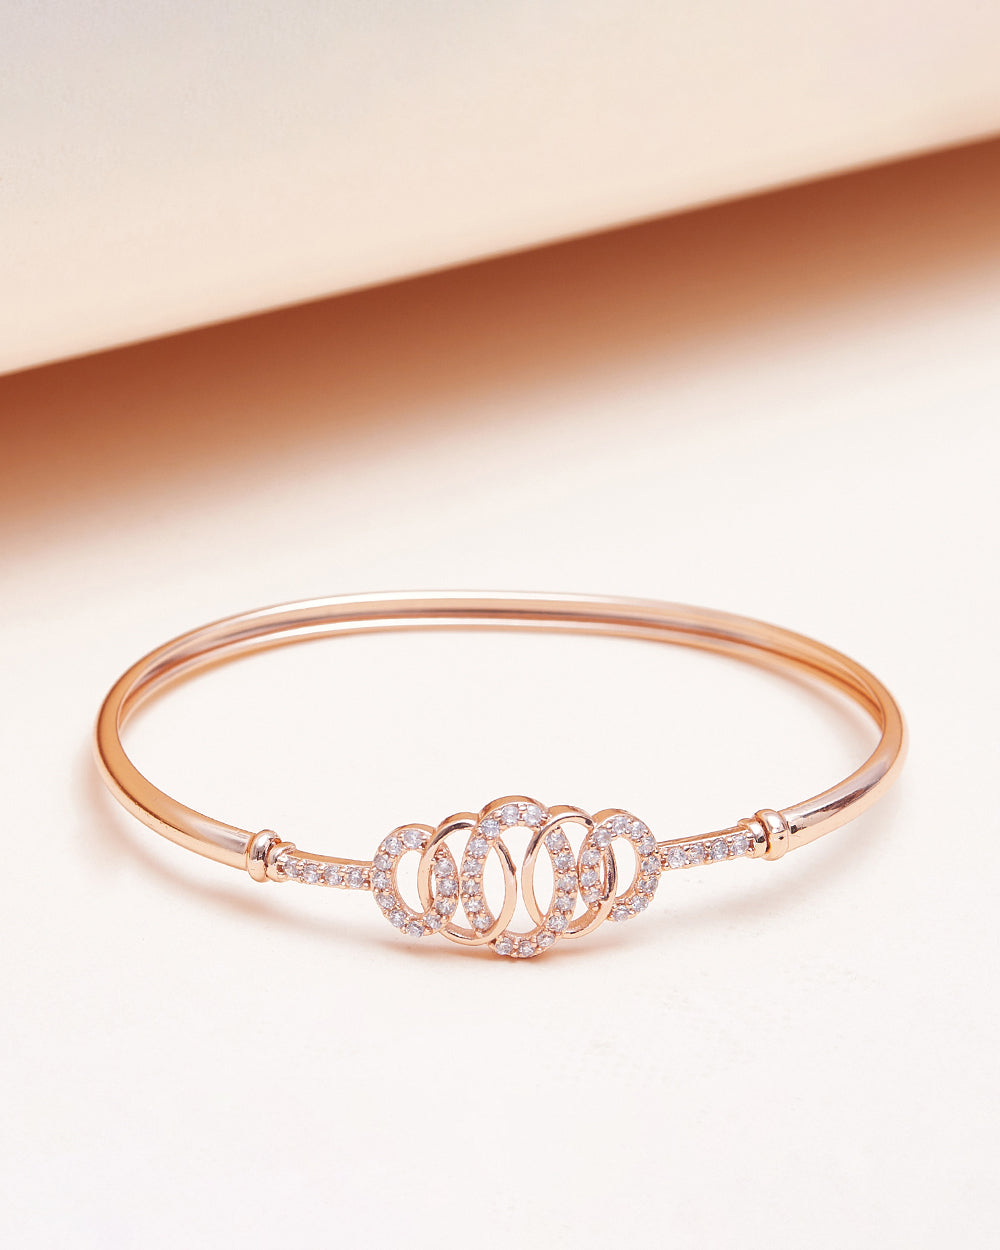 Women's Crown Design Rose Gold Bracelet With Gemstones - Voylla